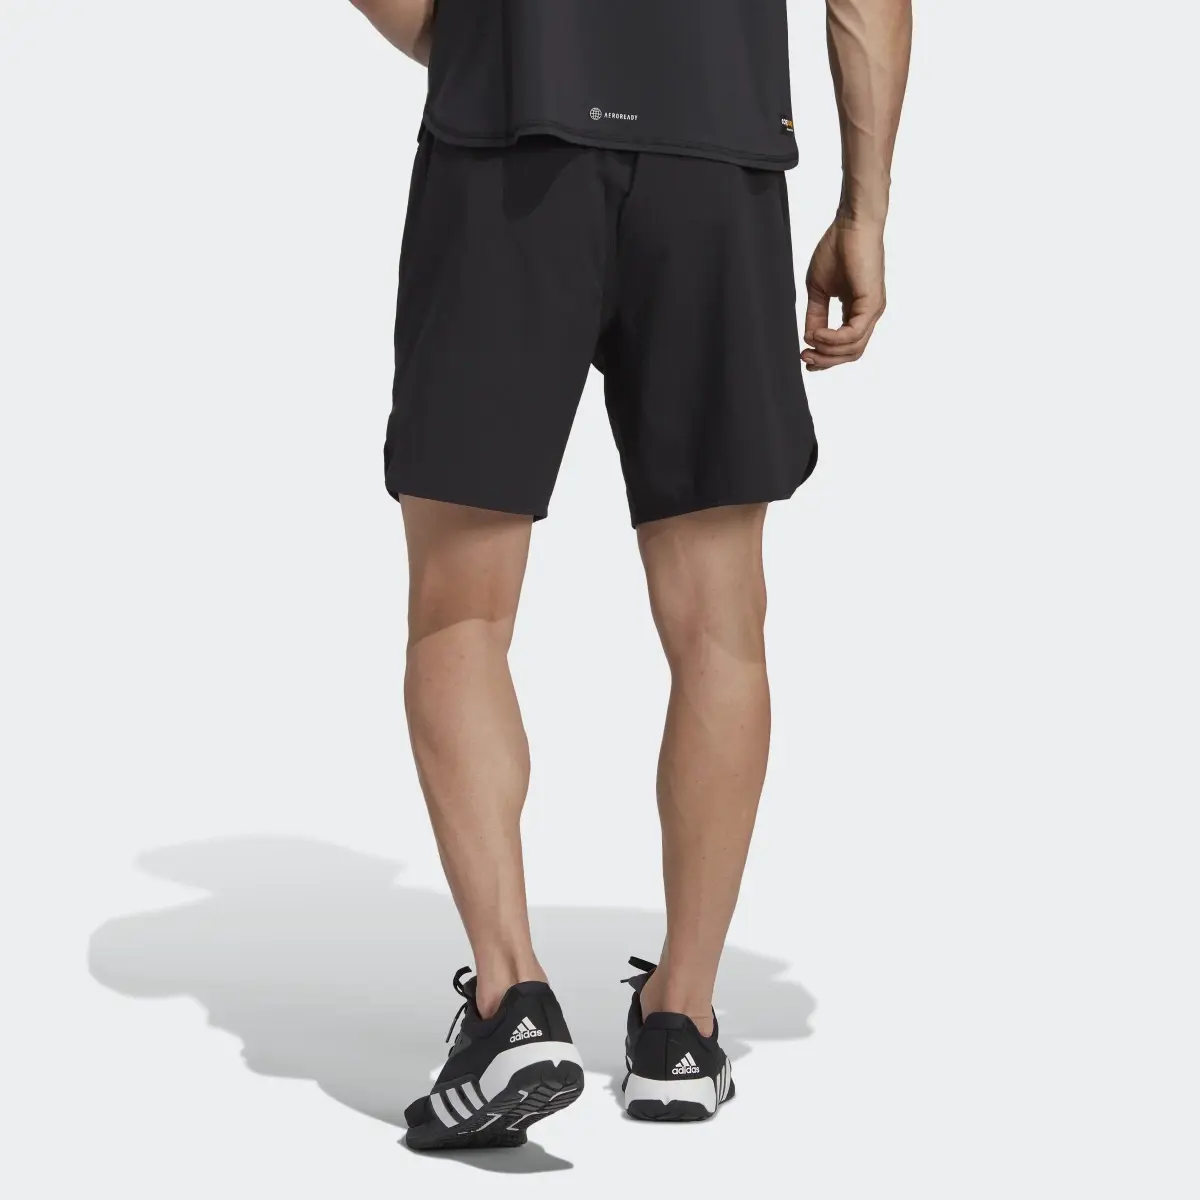 Adidas Designed 4 Training CORDURA® Workout Shorts. 2